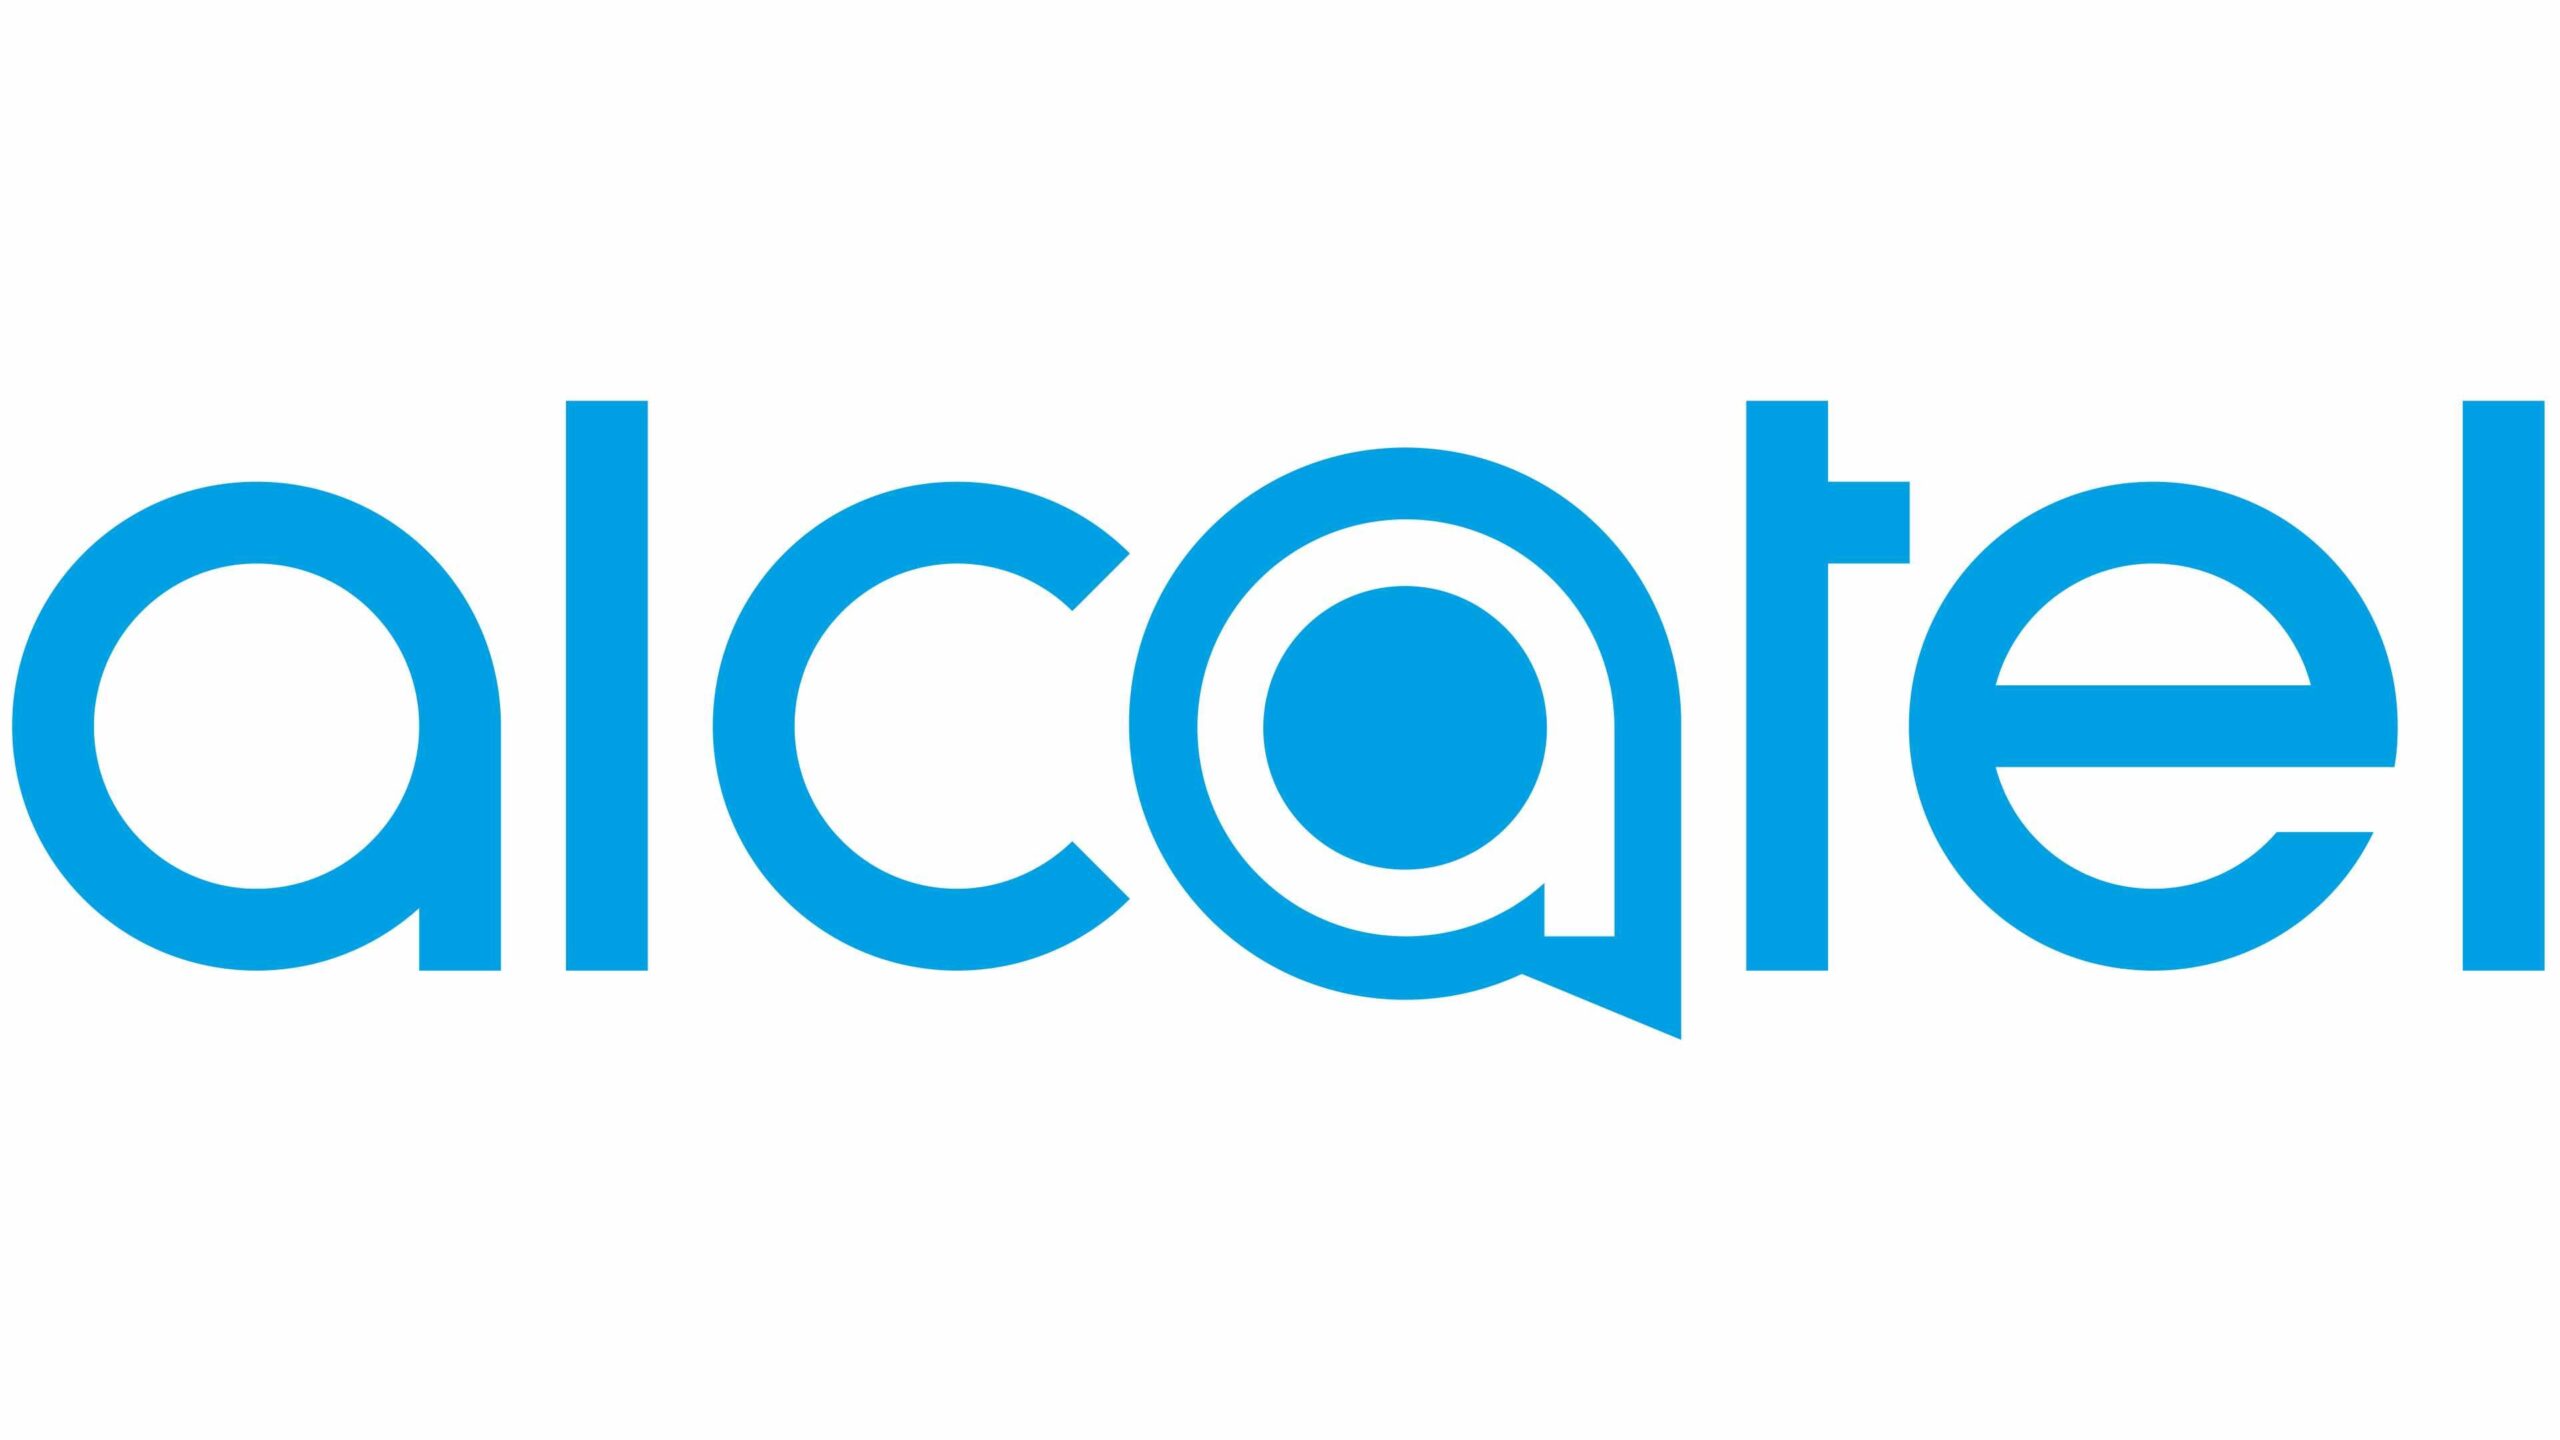 Alcatel-logo